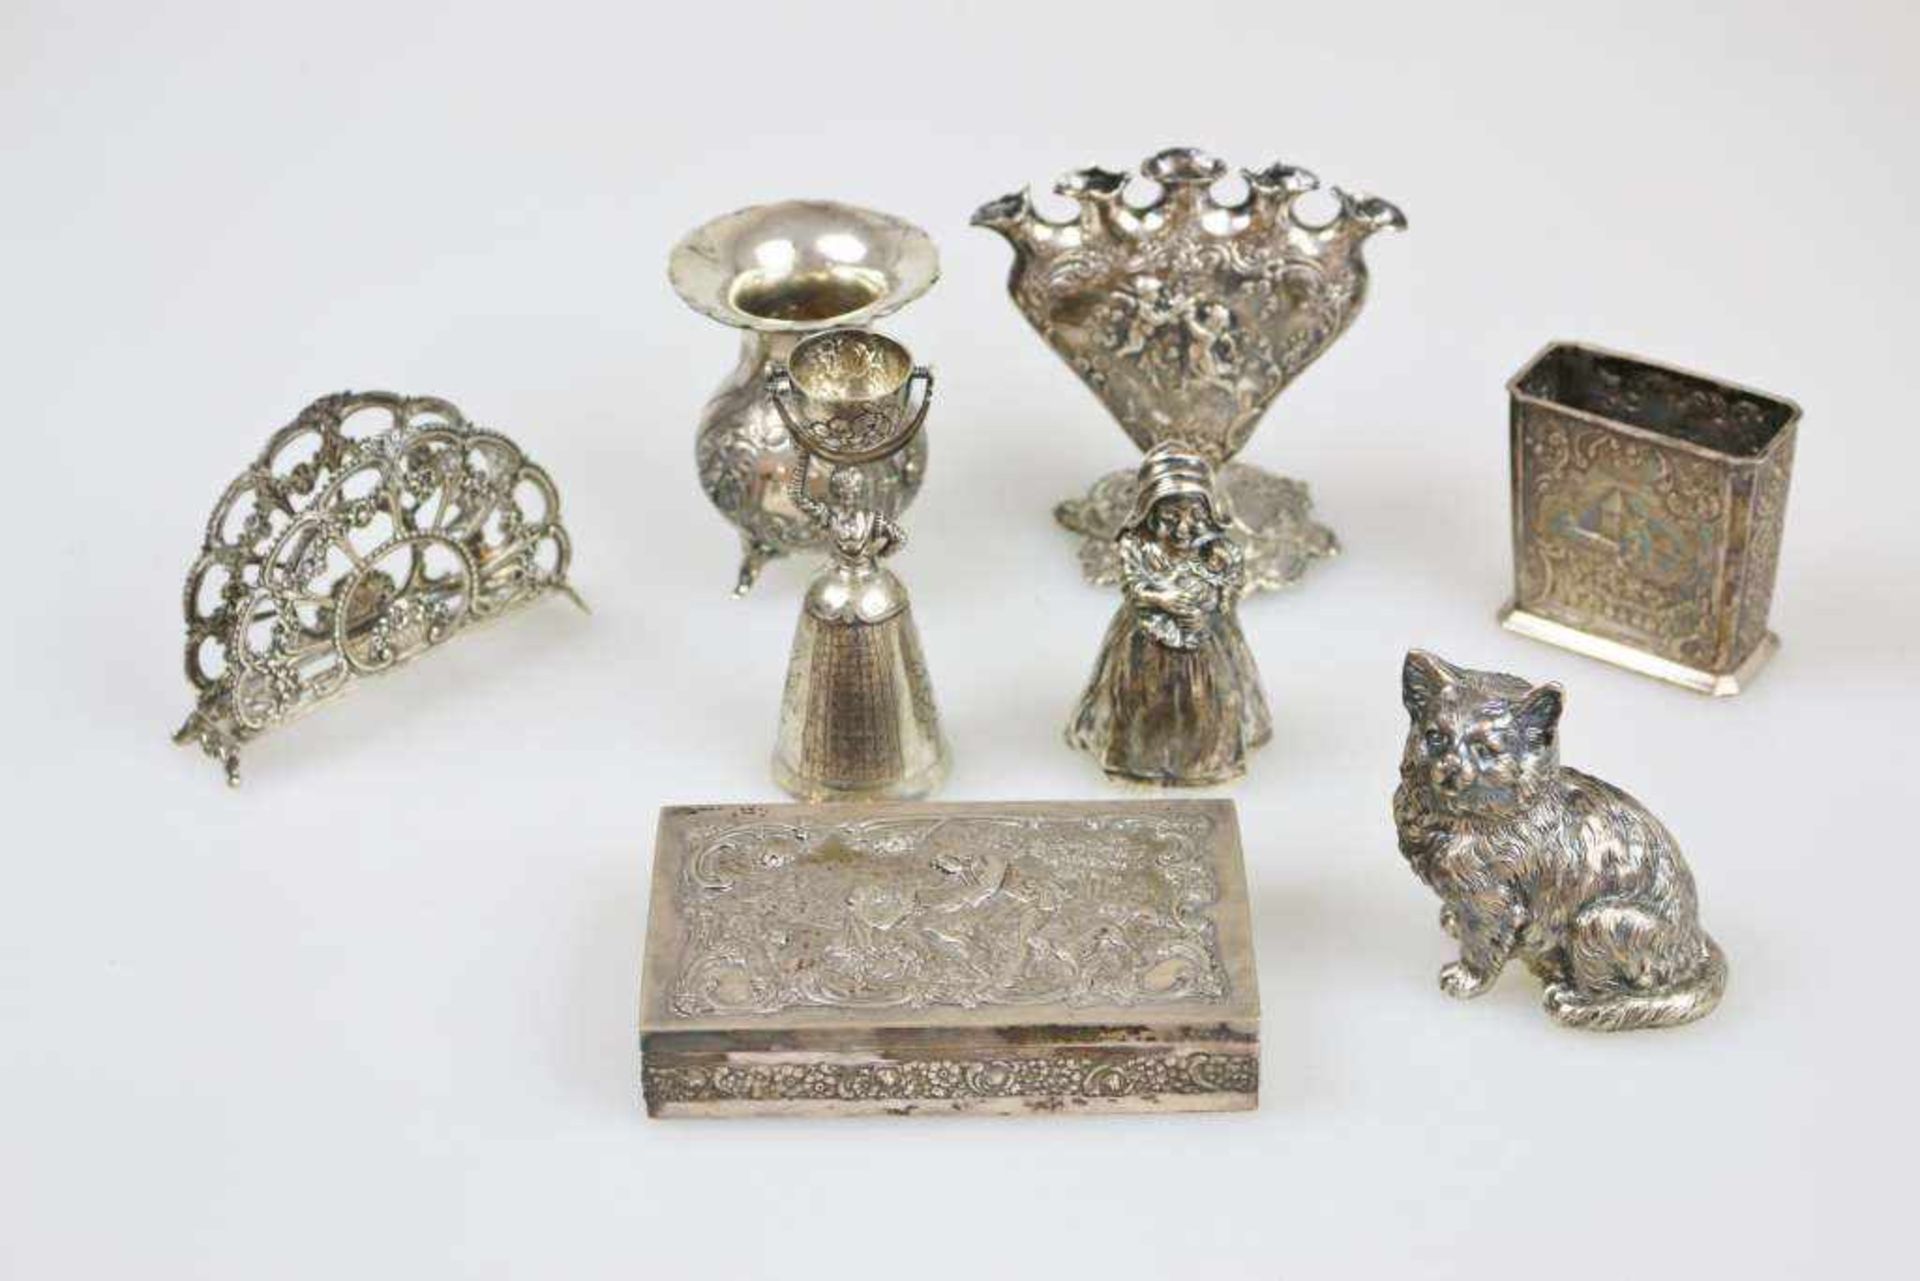 8-teiliges Konvolut Silber/Versilbertes, 20. Jh., bestehend aus zwei Tischglocken, einer